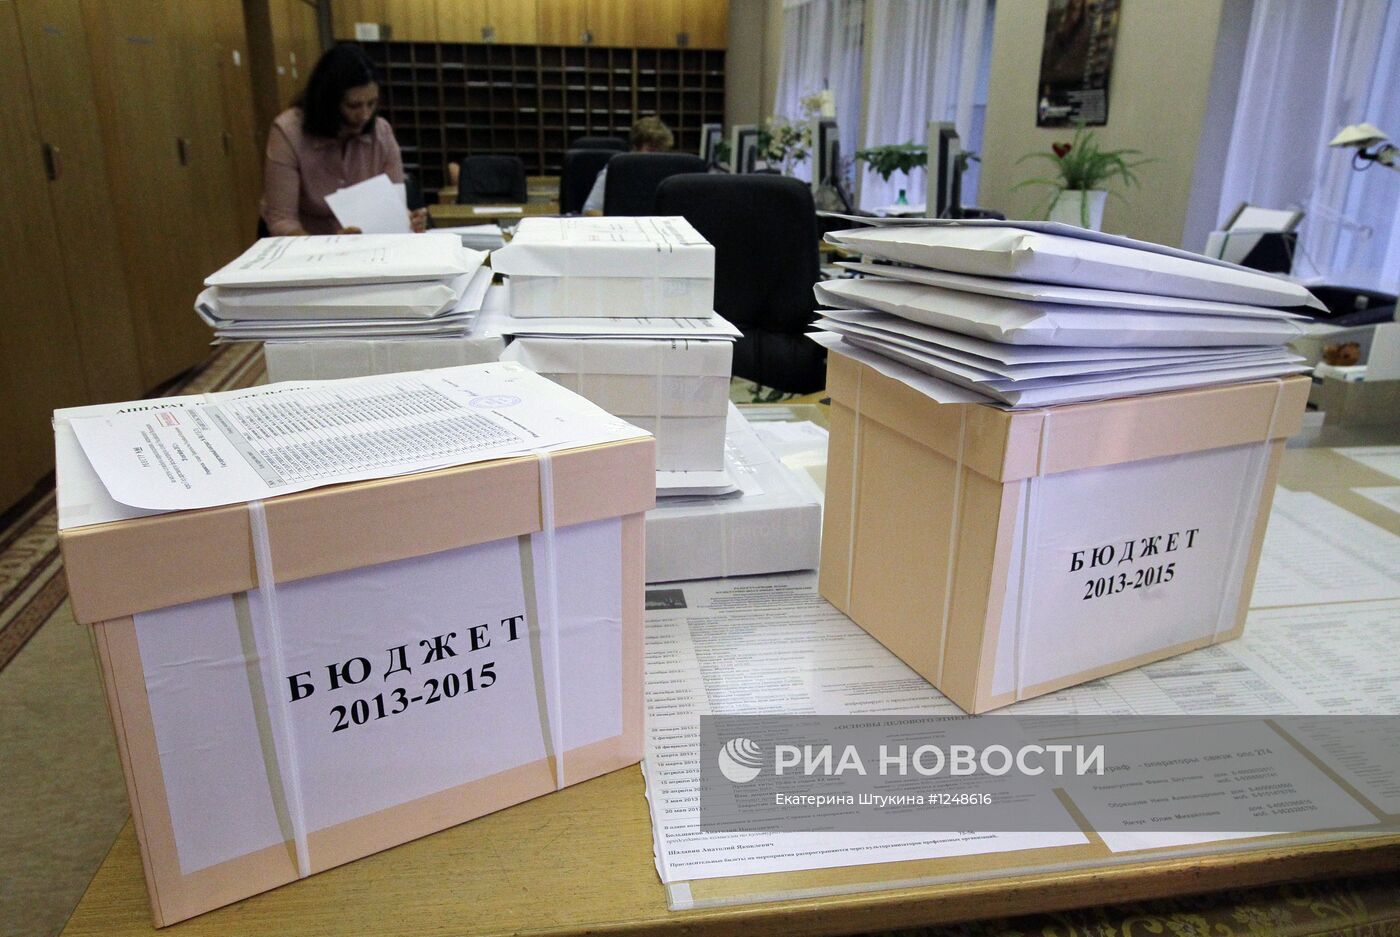 Проект бюджета на 2013-2015 годы отправлен в Госдуму РФ